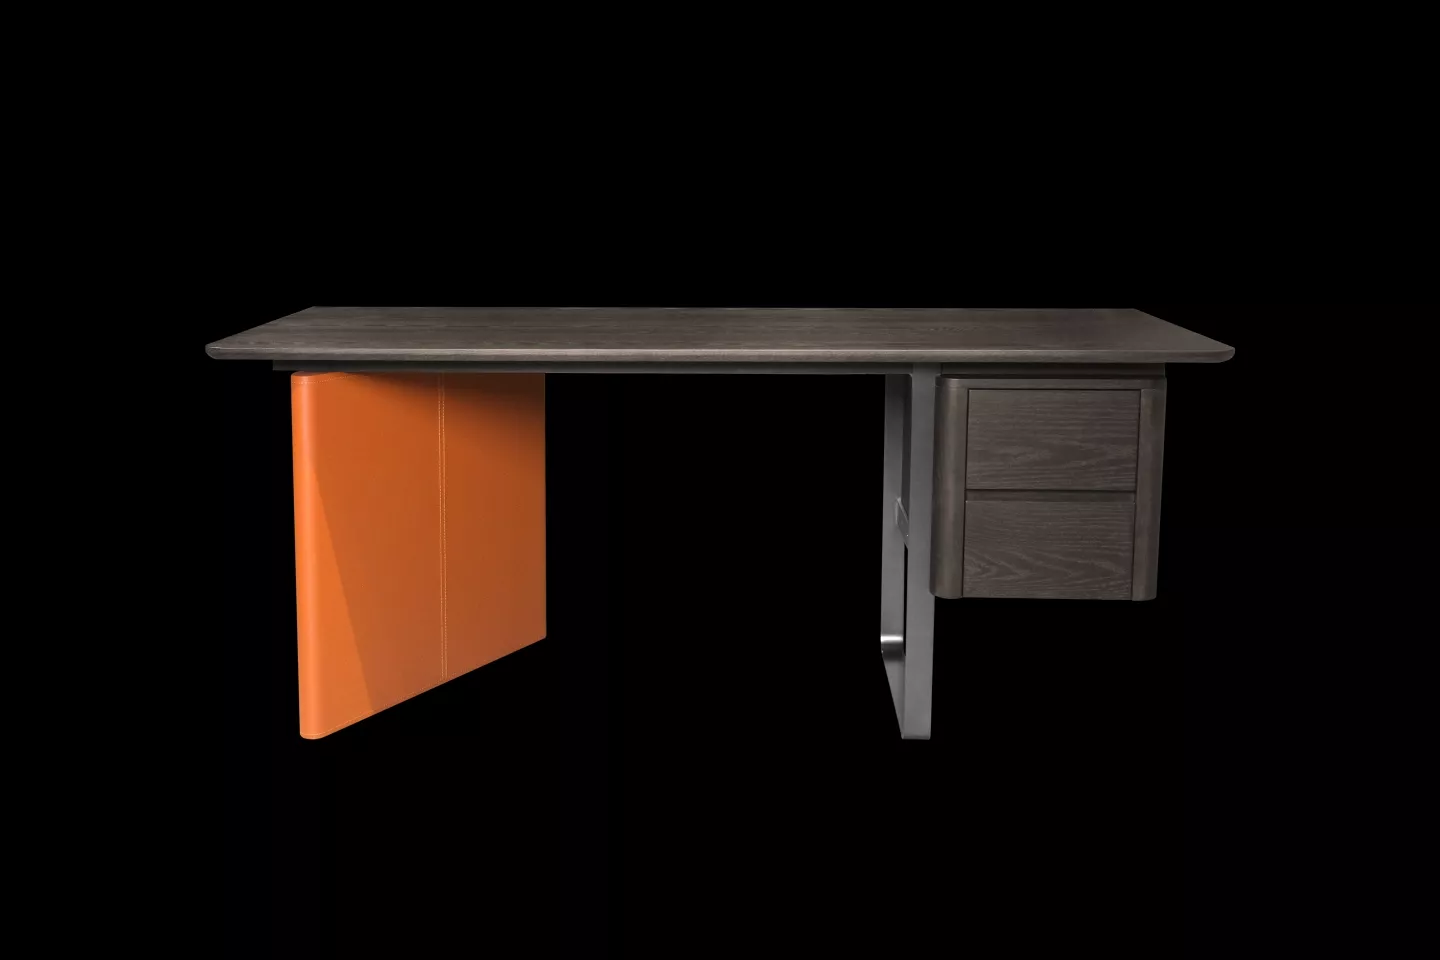 書桌材質為全實木桌面搭配不鏽鋼桌腳與橘色馬鞍皮